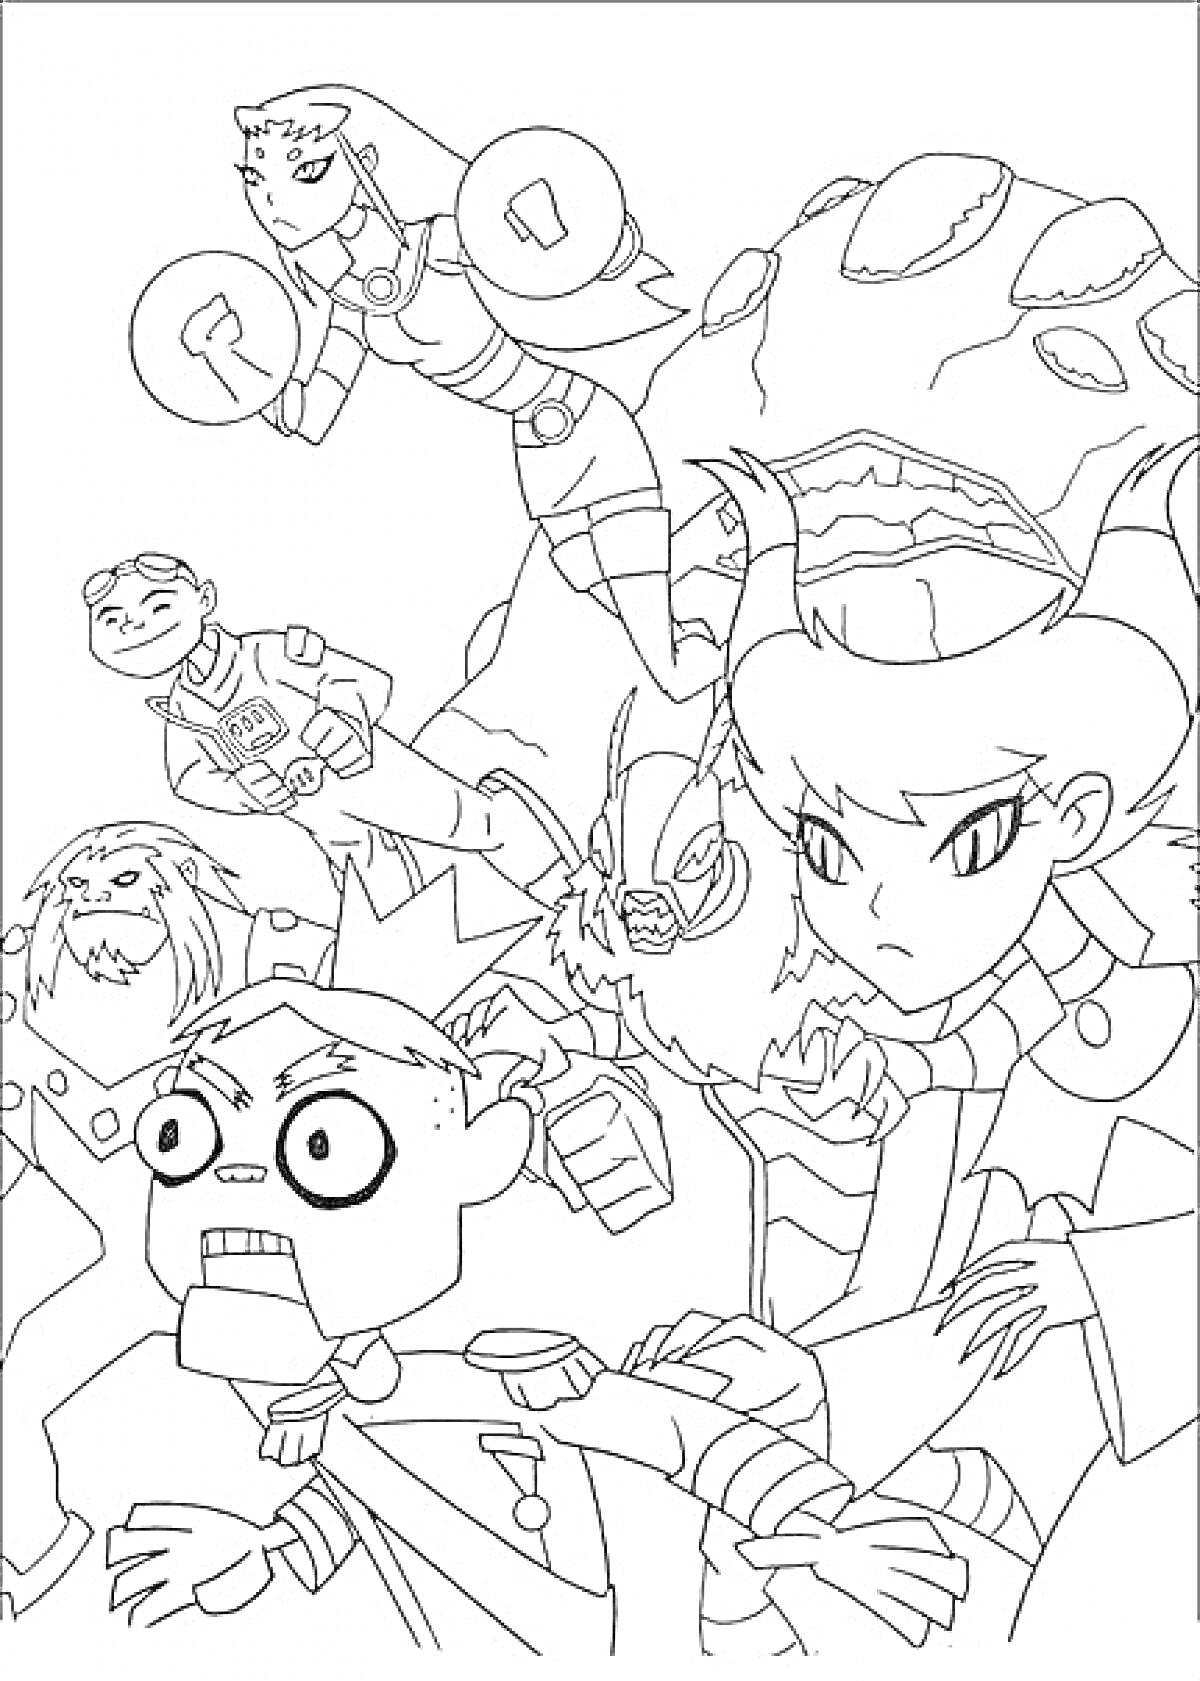 Раскраска Герои Юные Титаны в боевой готовности. Летающая девушка, девочка с длинным волосом и рогами, мальчик в костюме, большое существо на заднем плане и двое меньших персонажей на переднем плане.